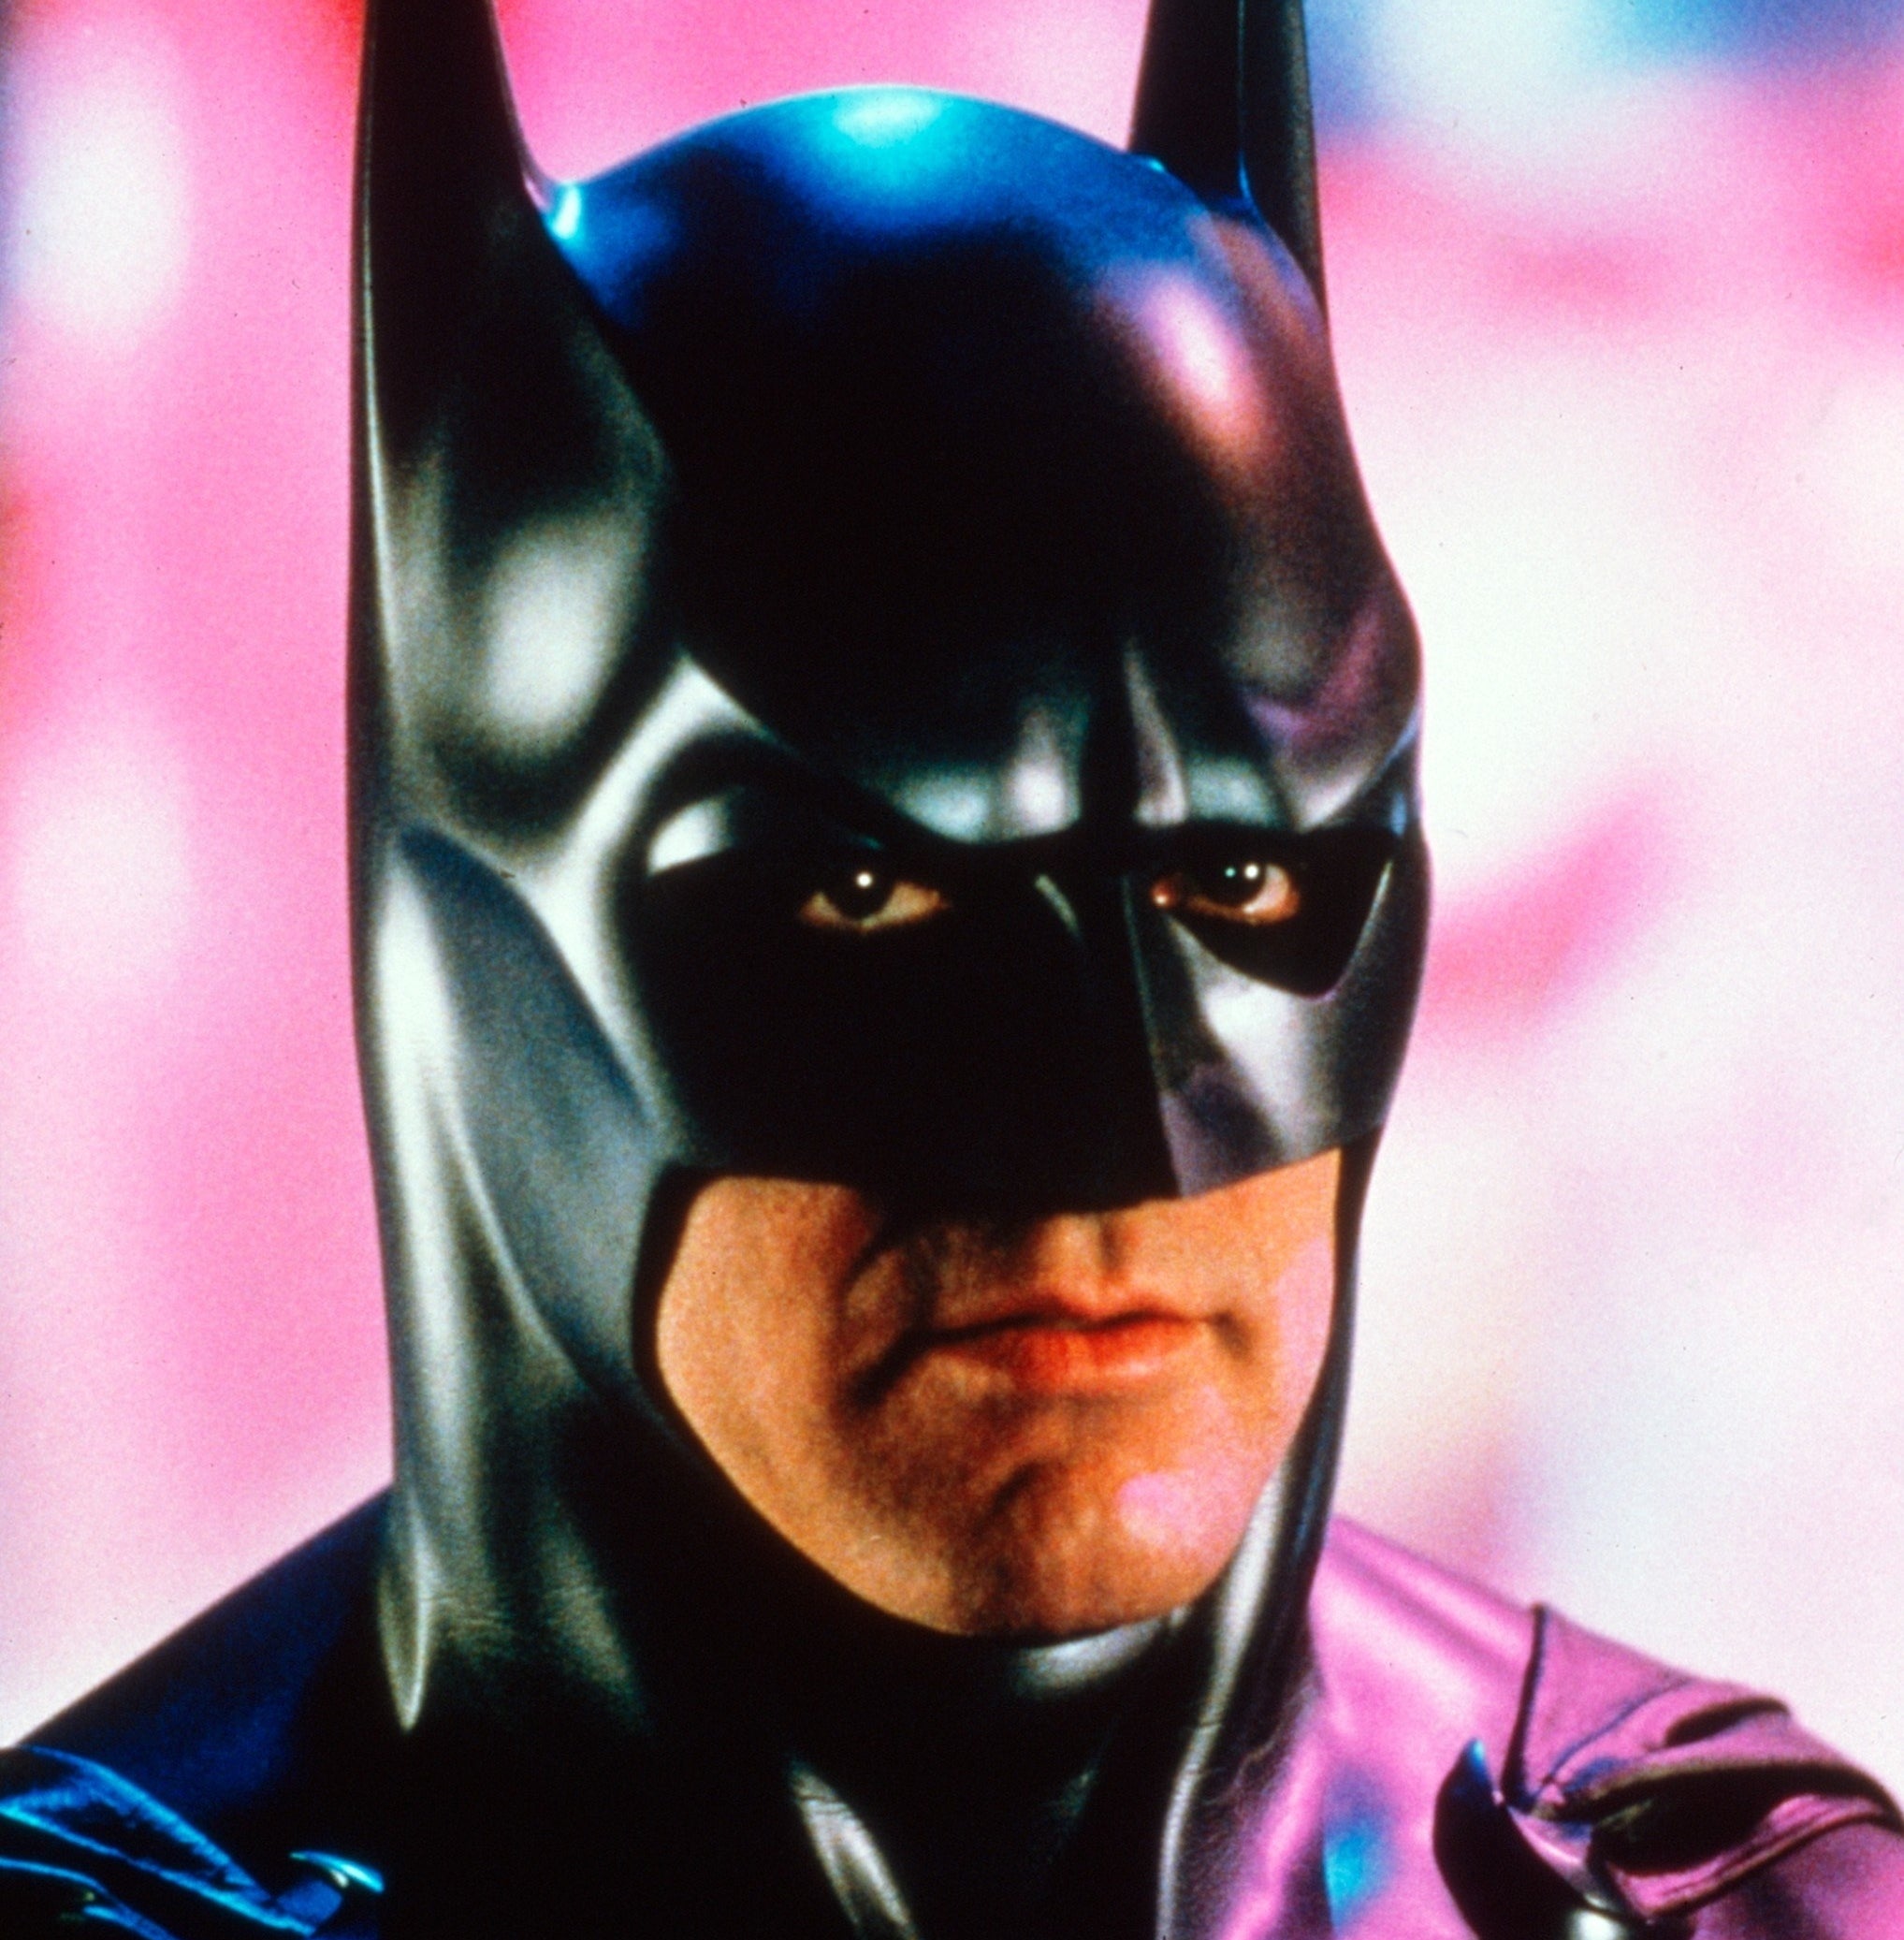 Closeup of Batman